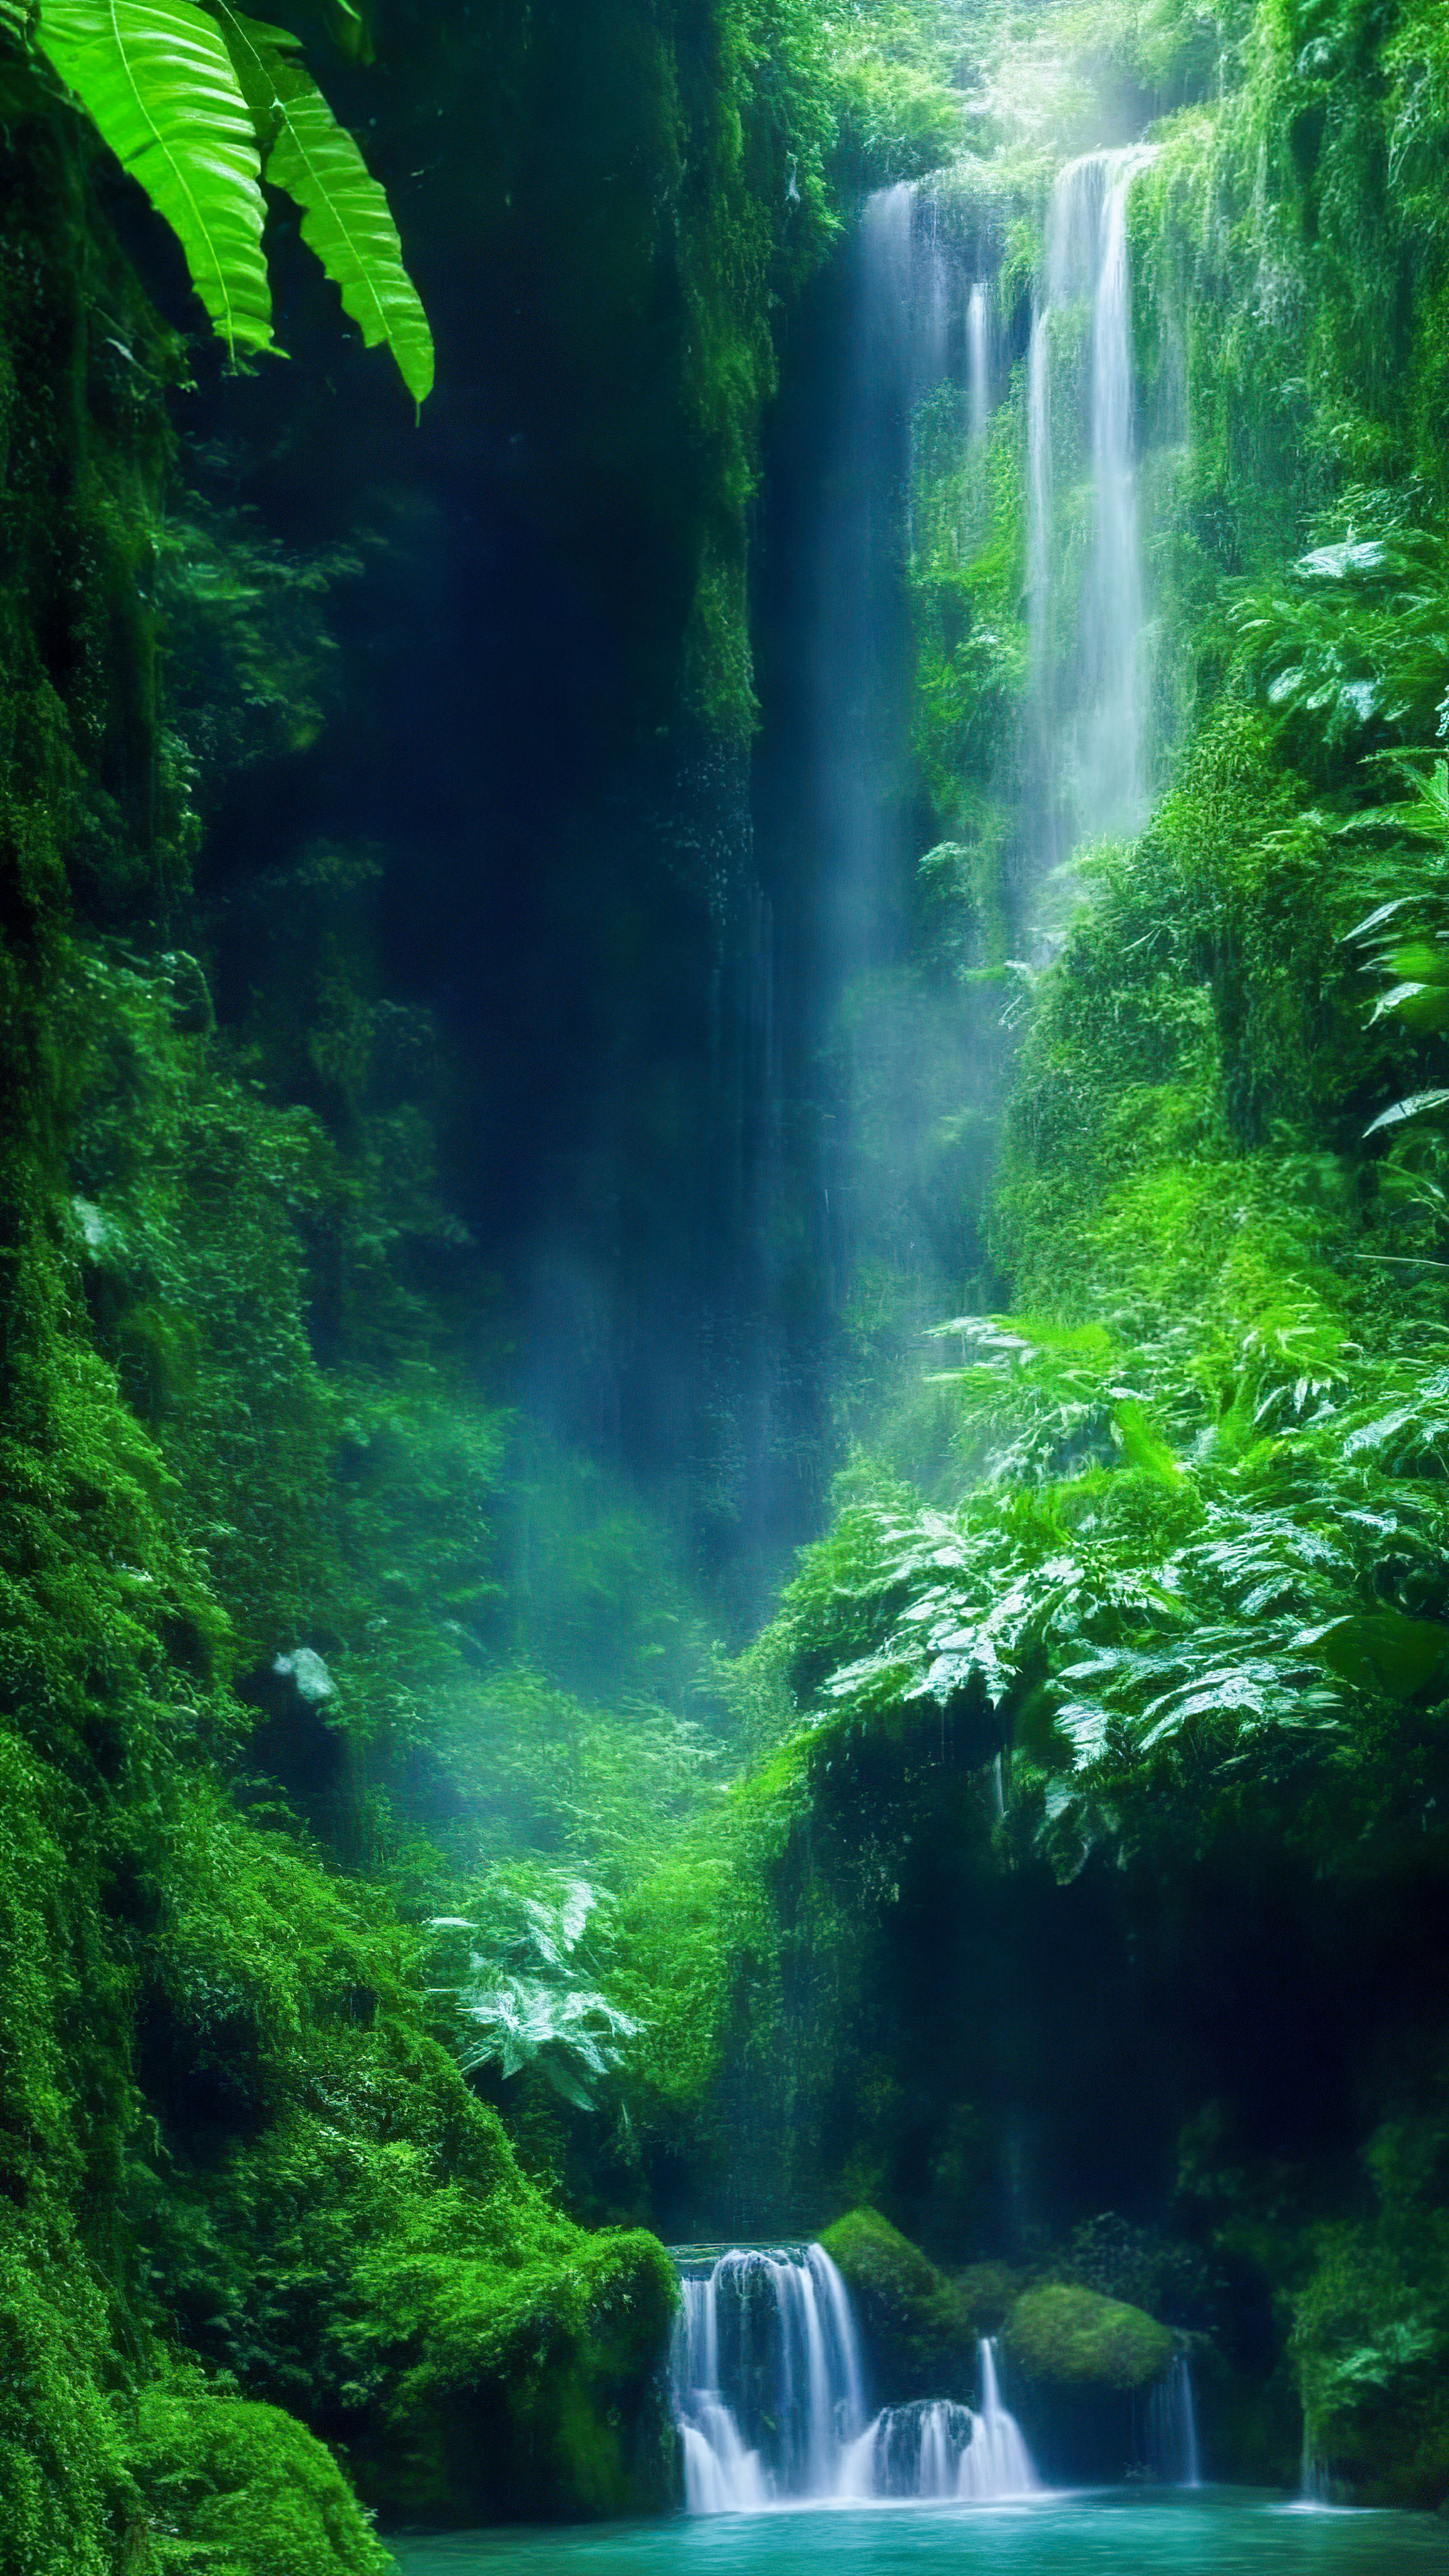 Perdez-vous dans la magie de notre joli fond d'écran de paysage, présentant une cascade mystique enchantée cachée au plus profond de la forêt tropicale verdoyante.